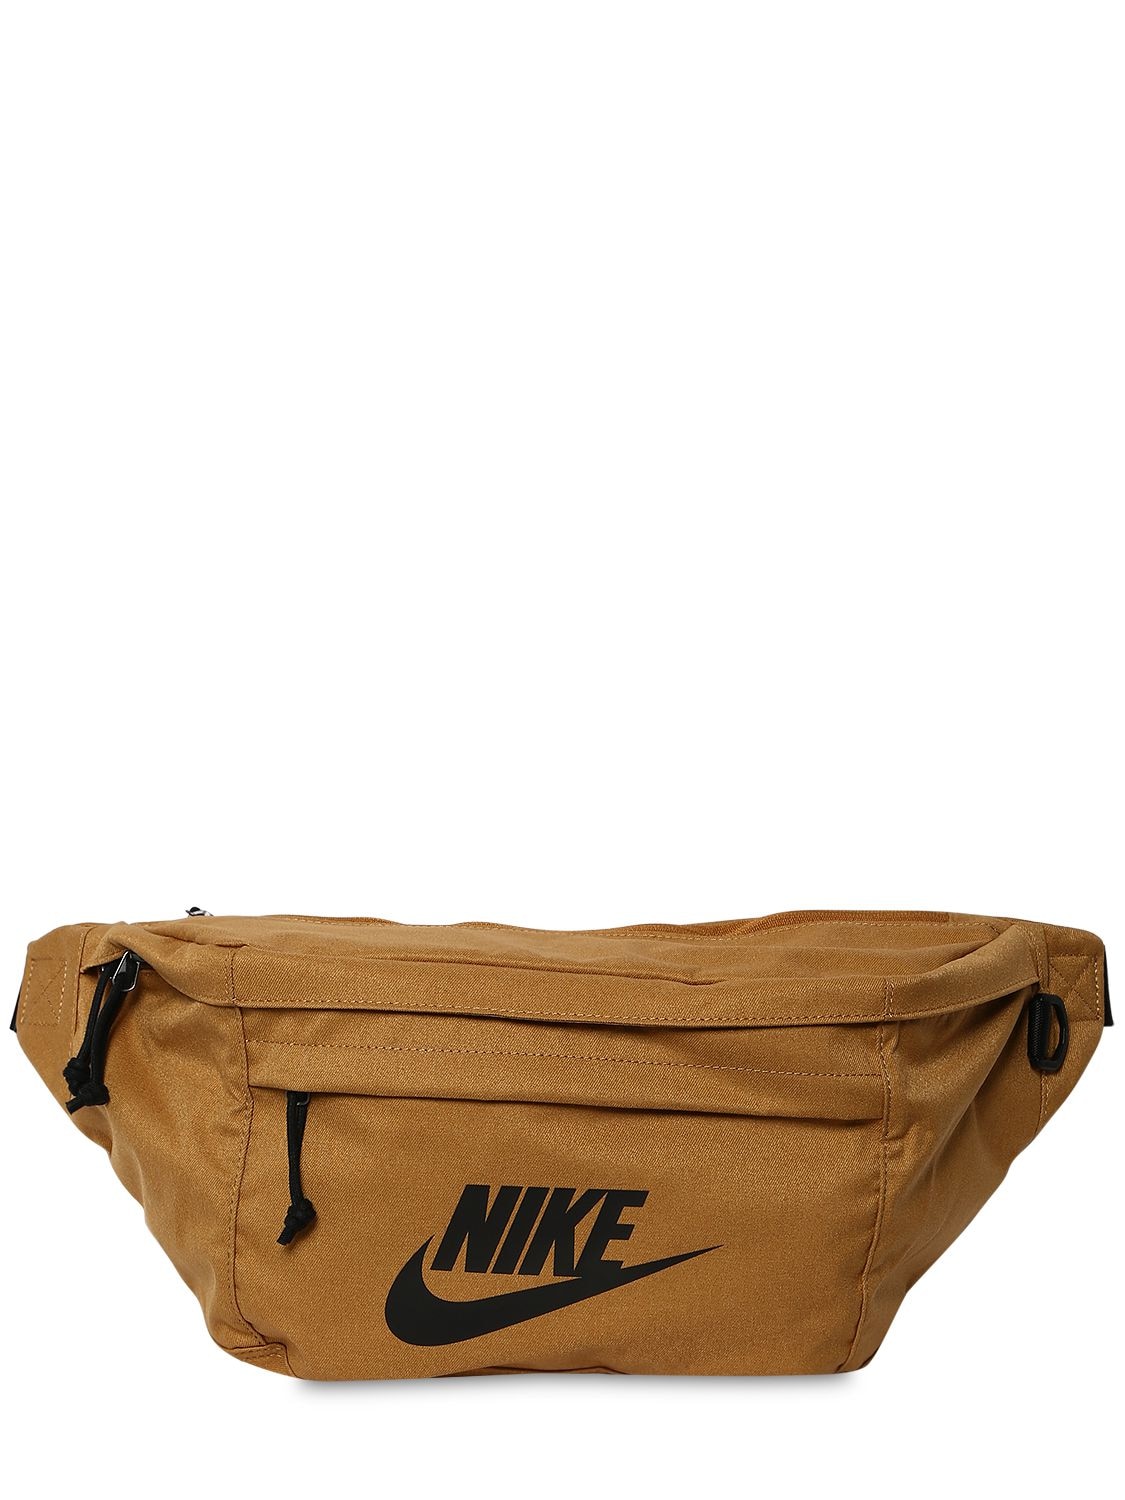 Nike Tech Belt Bag In Yellow